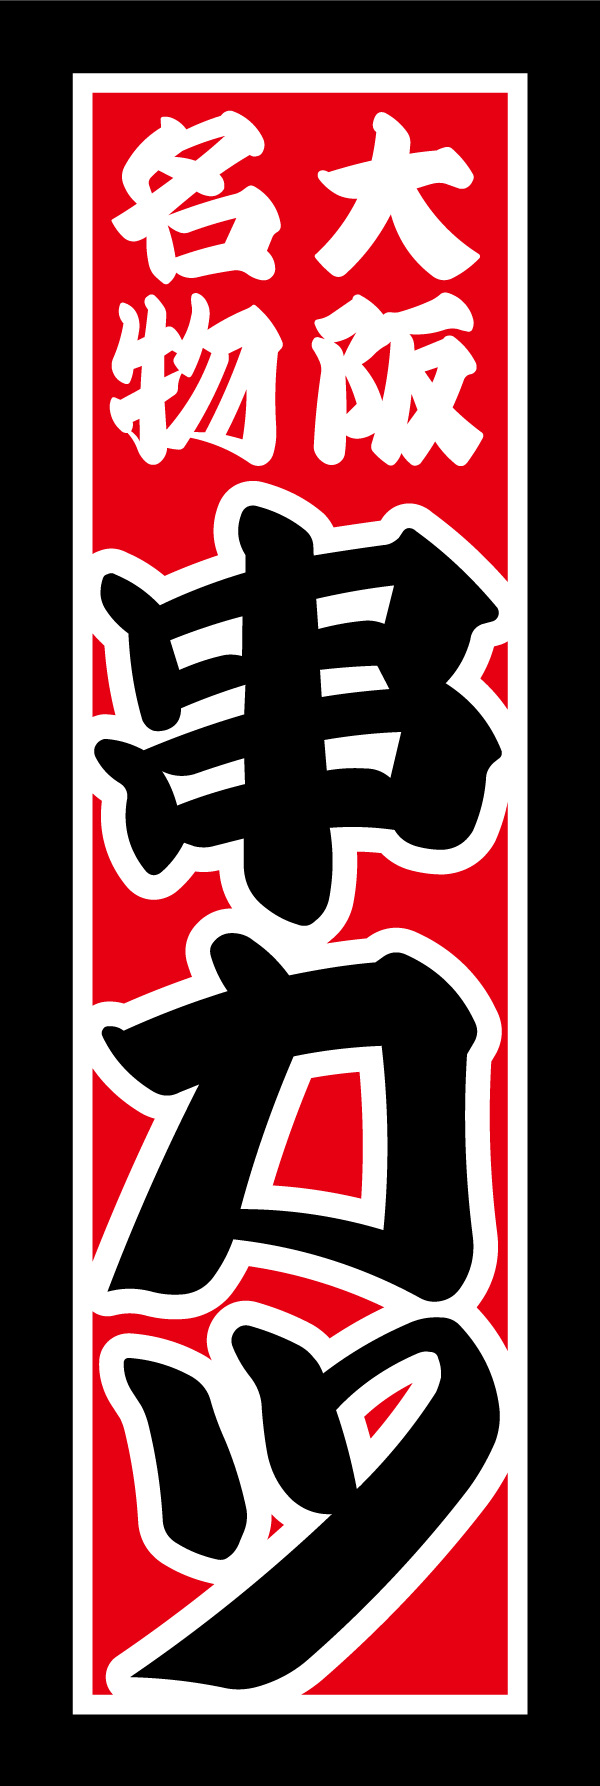 串かつ 07 「串カツ」ののぼりです。大阪名物の串カツをイメージし、コテコテで派手なデザインにしあげました。(Y.M)